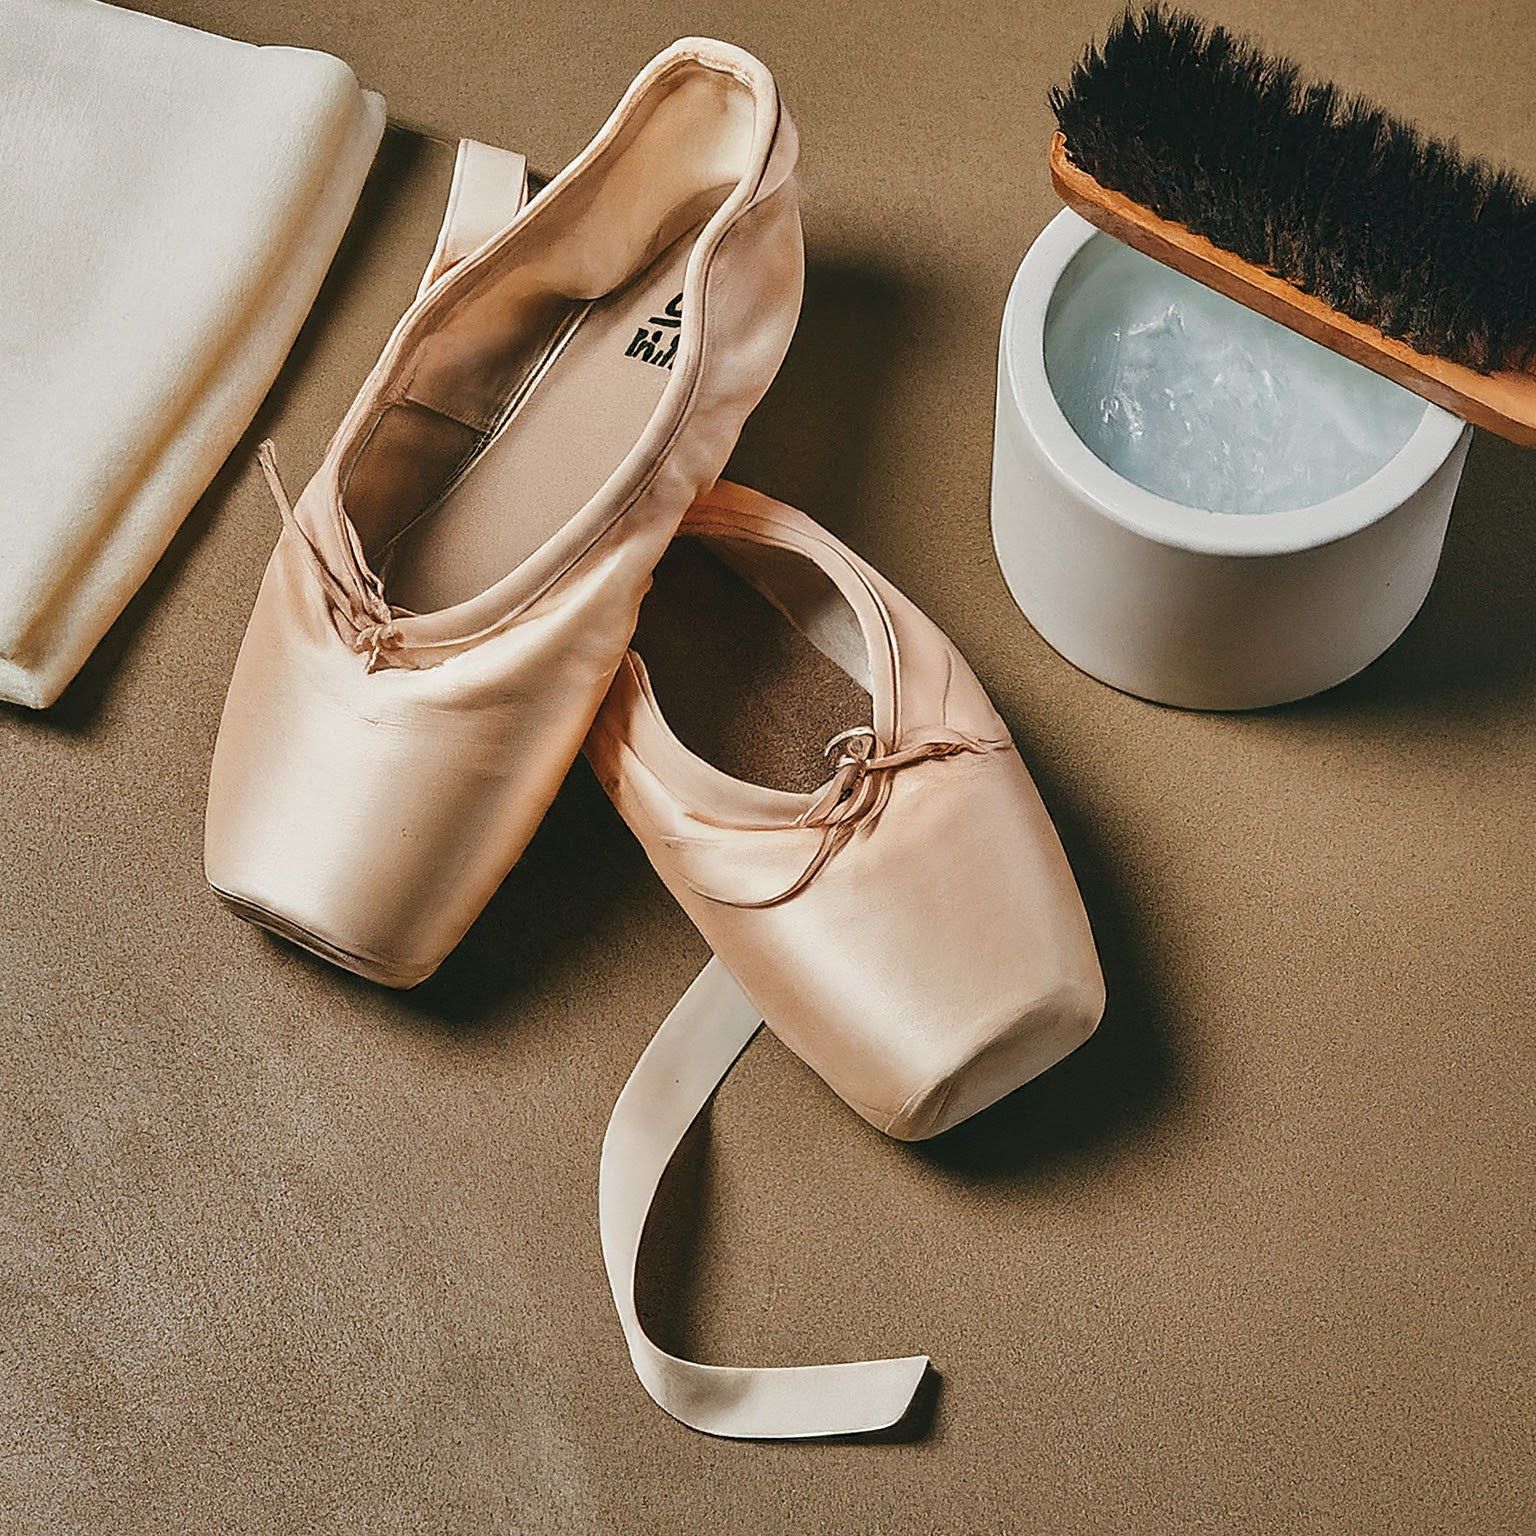 Can you wash Capezio ballet shoes?